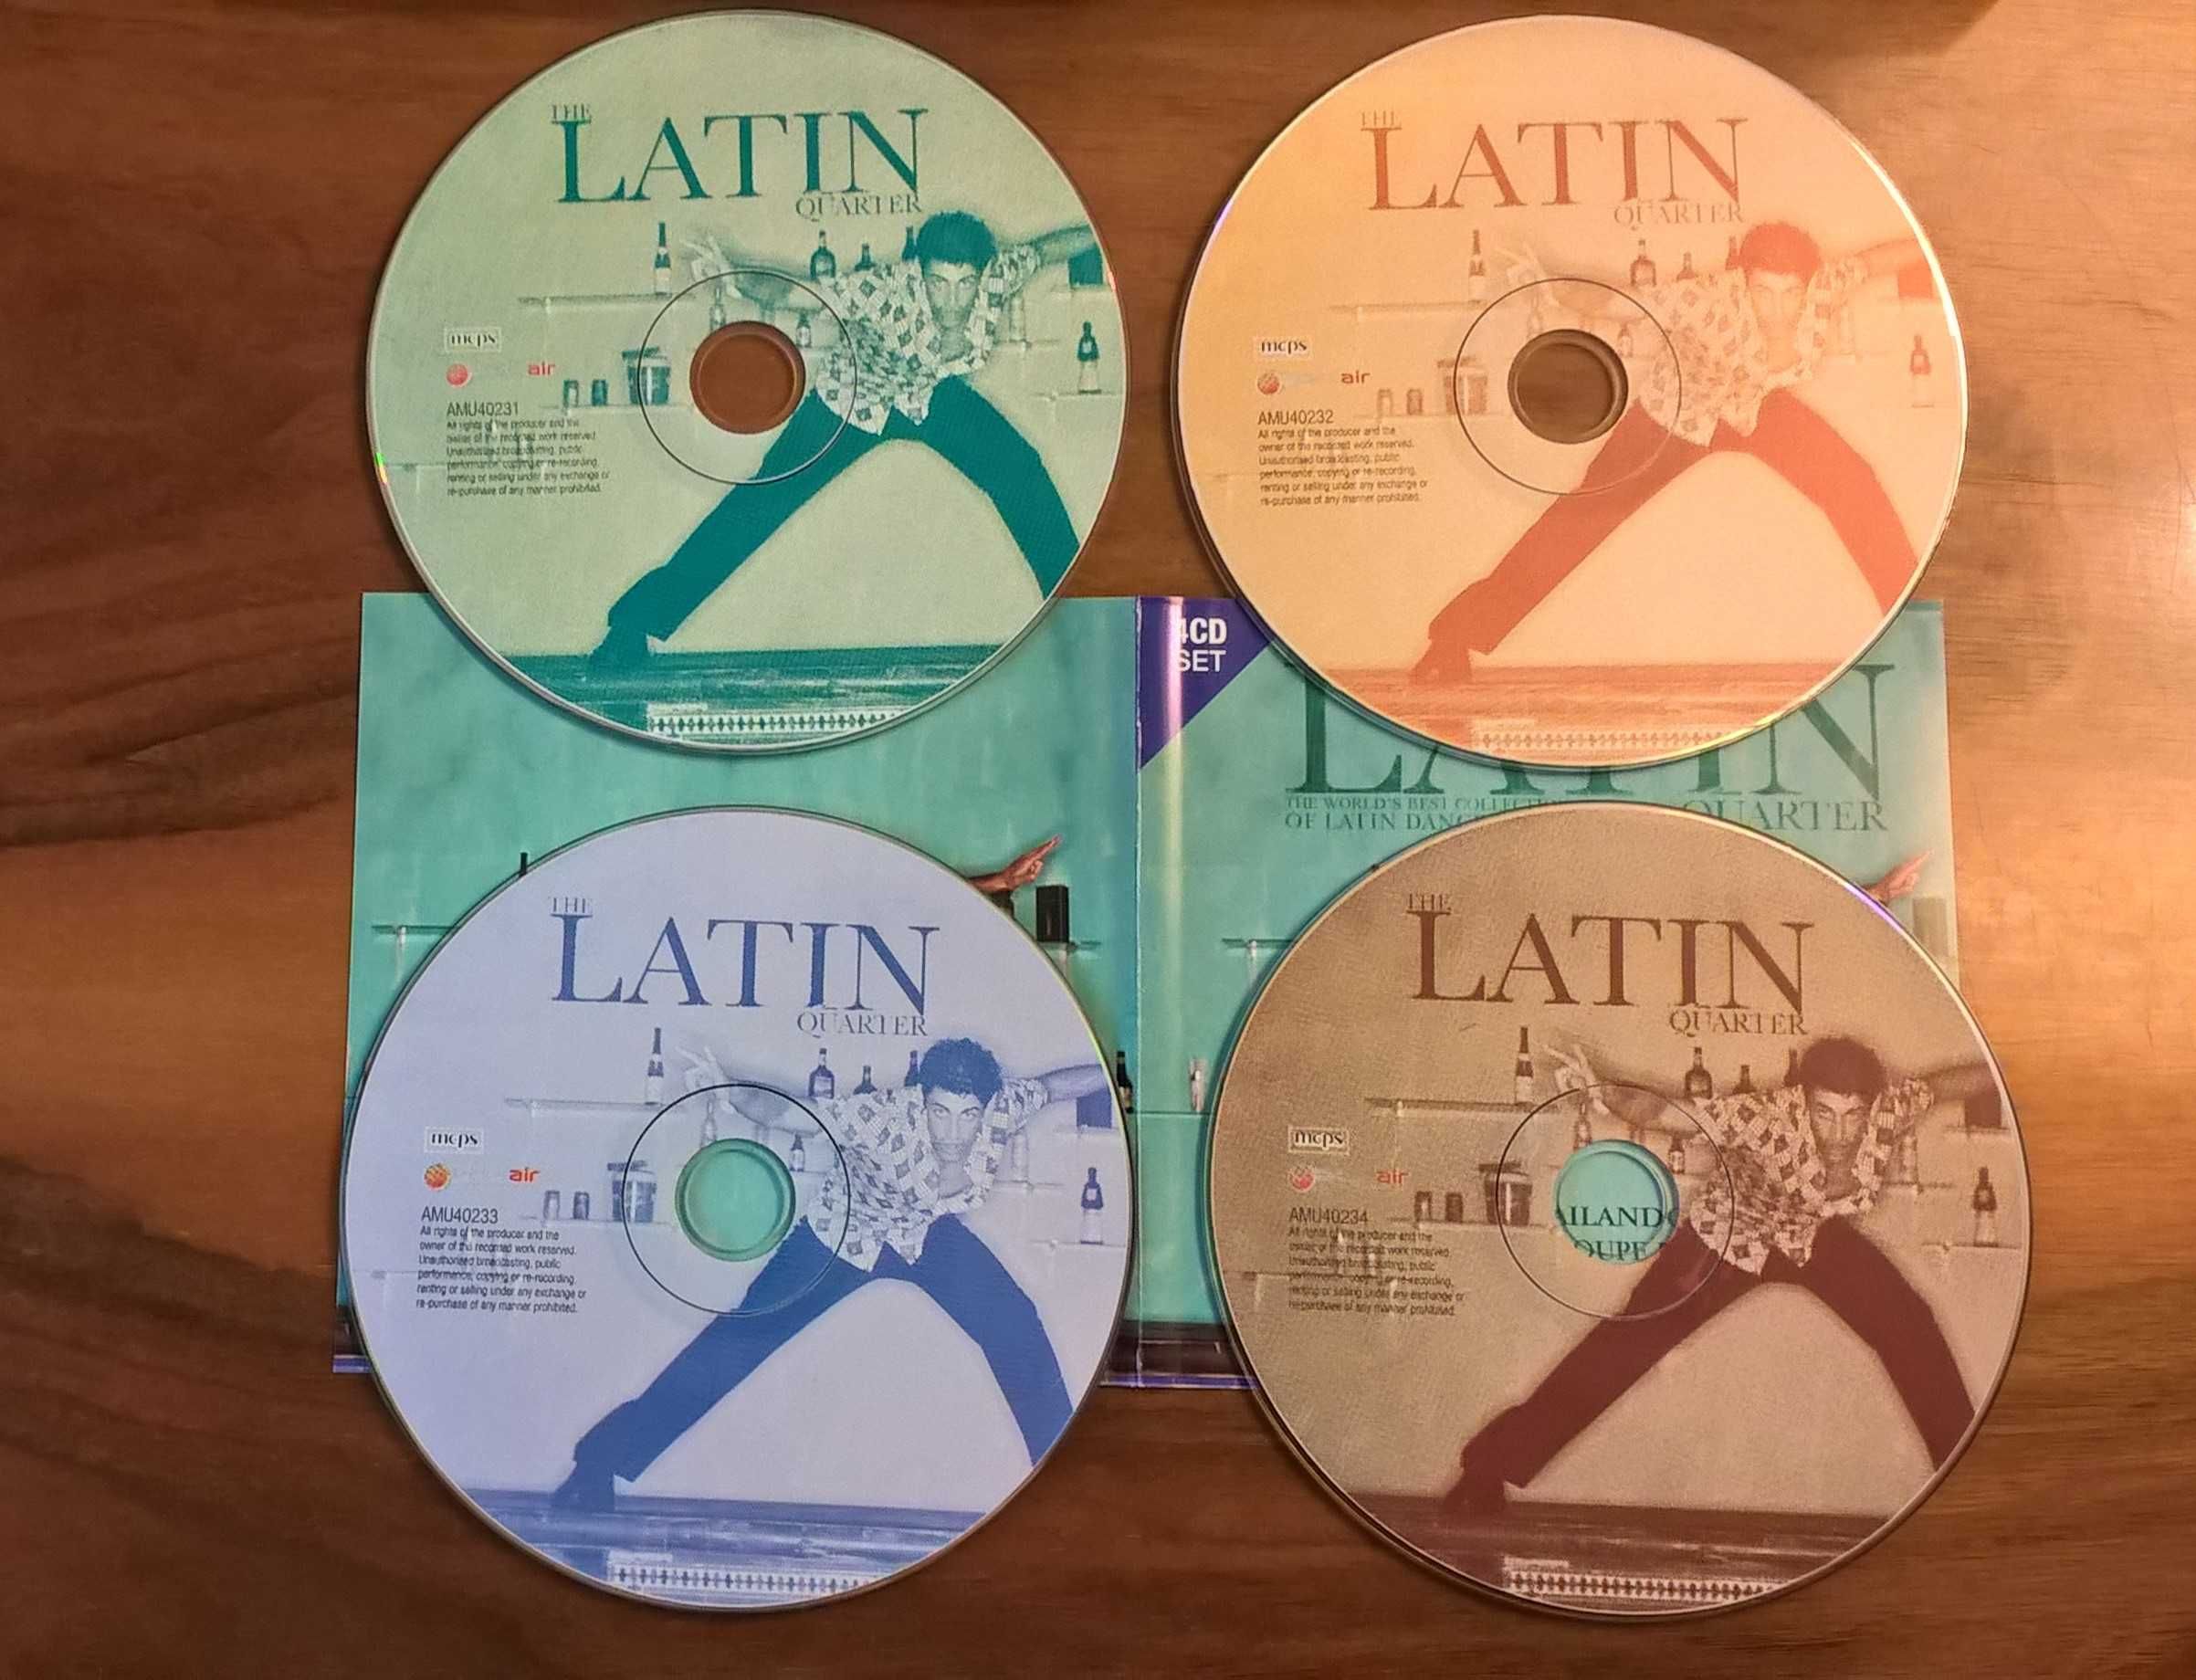 Zestaw 4 CD "The Latin Quarter" - muzyka taneczna latynoska